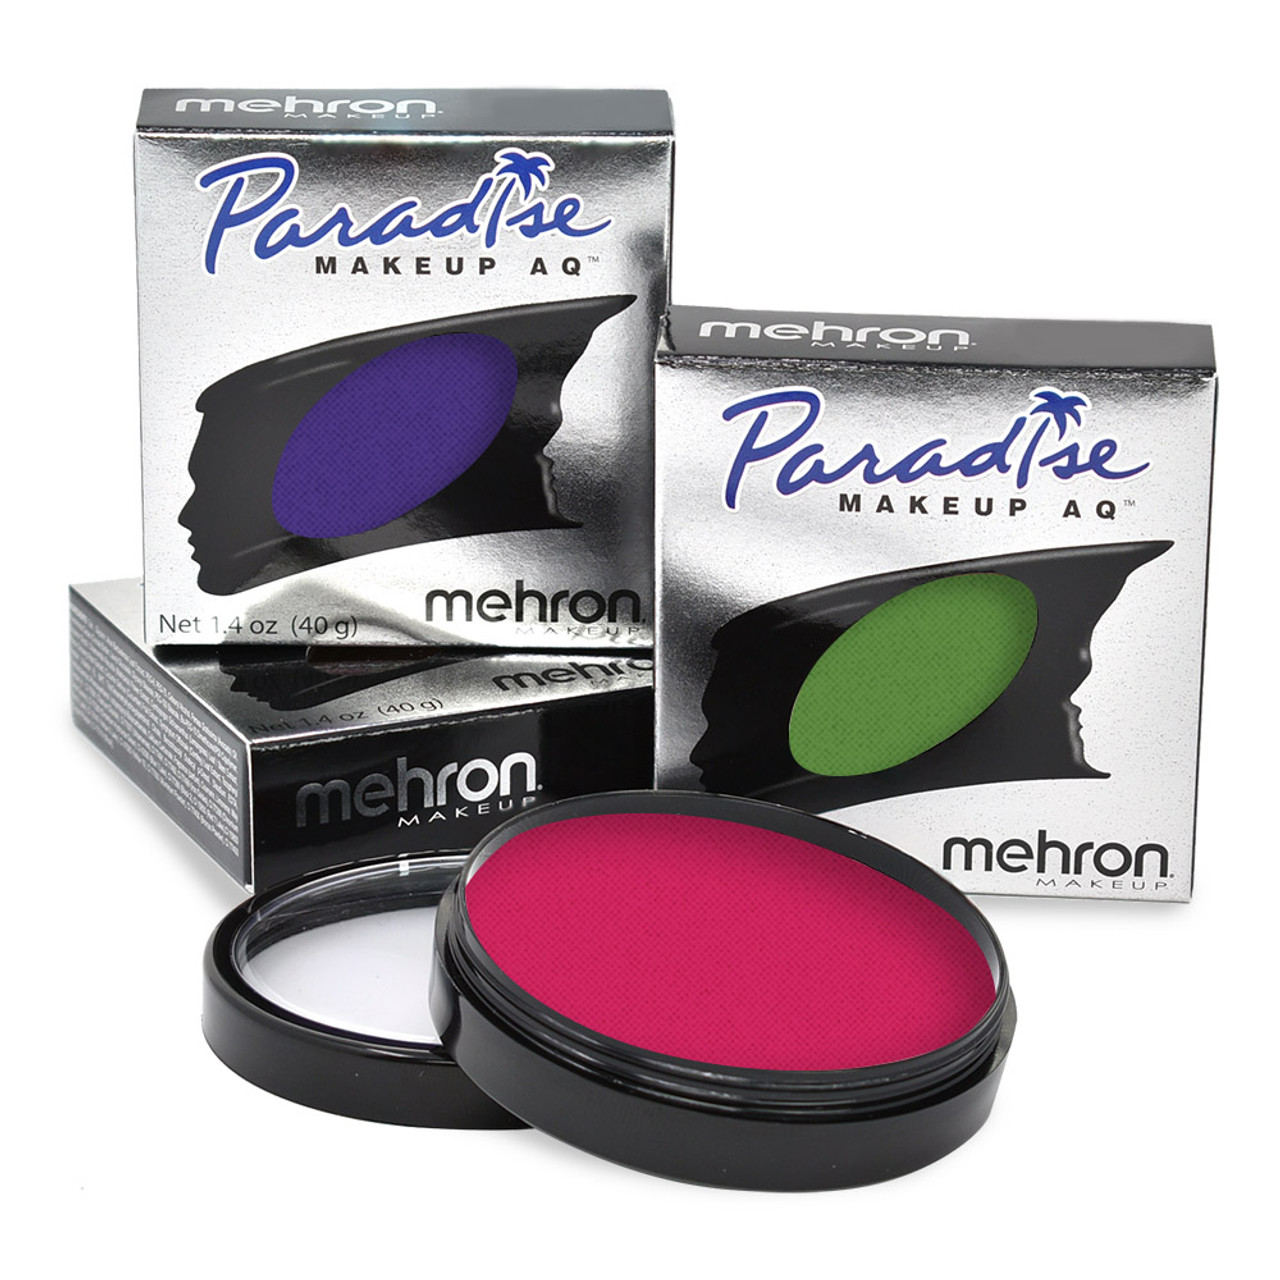  Mehron Makeup Paradise Makeup AQ 8 Color Basic